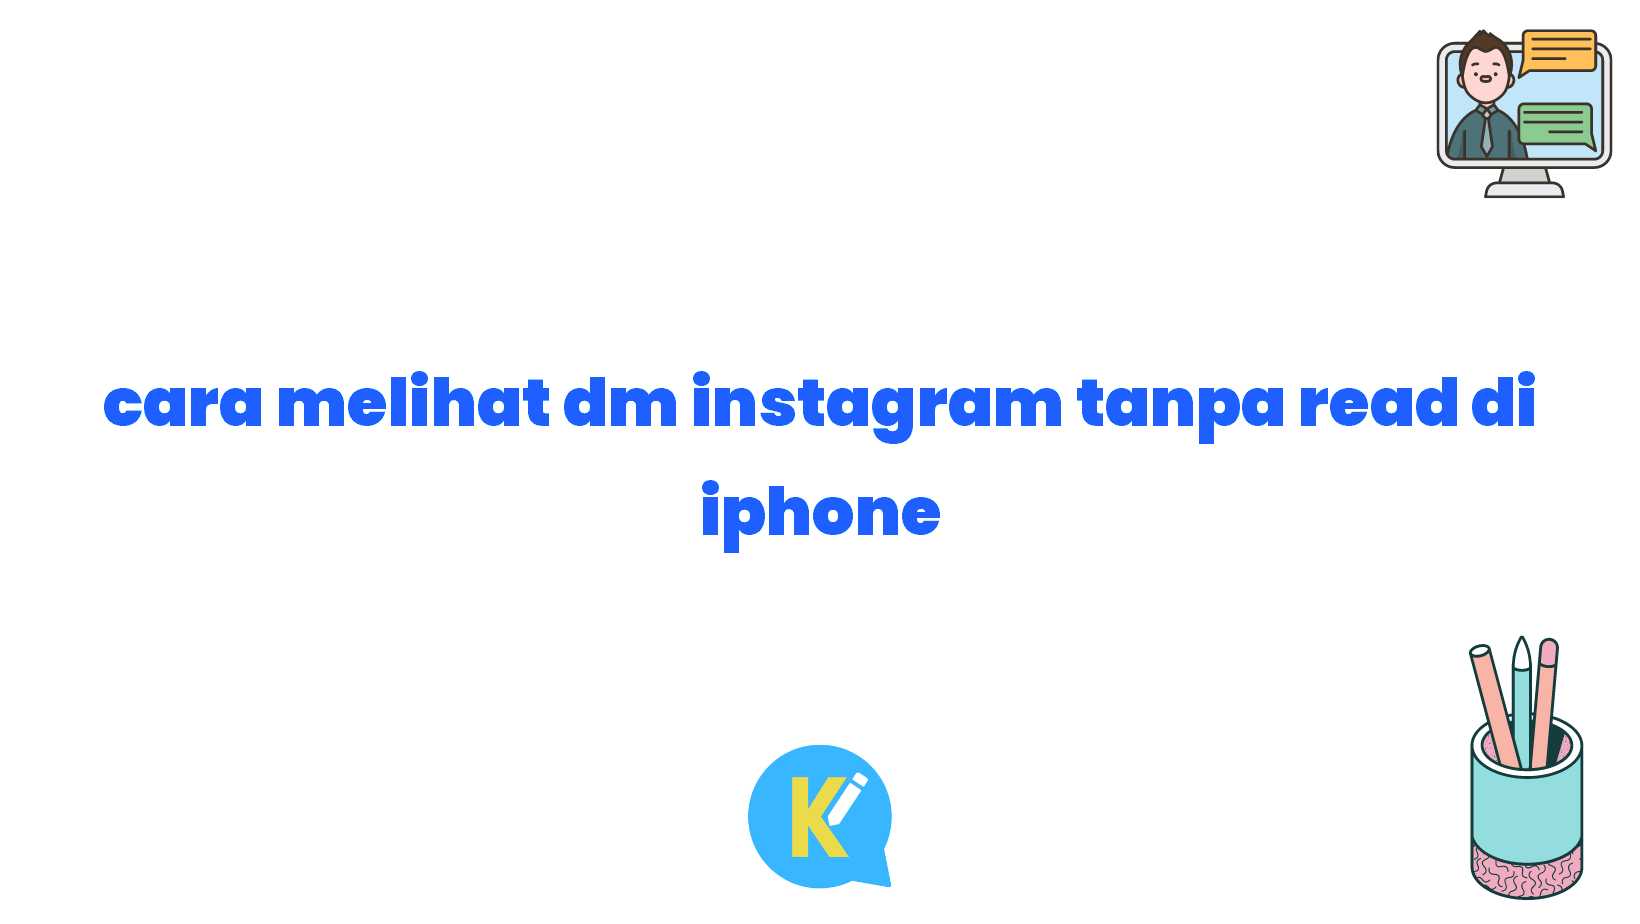 cara melihat dm instagram tanpa read di iphone